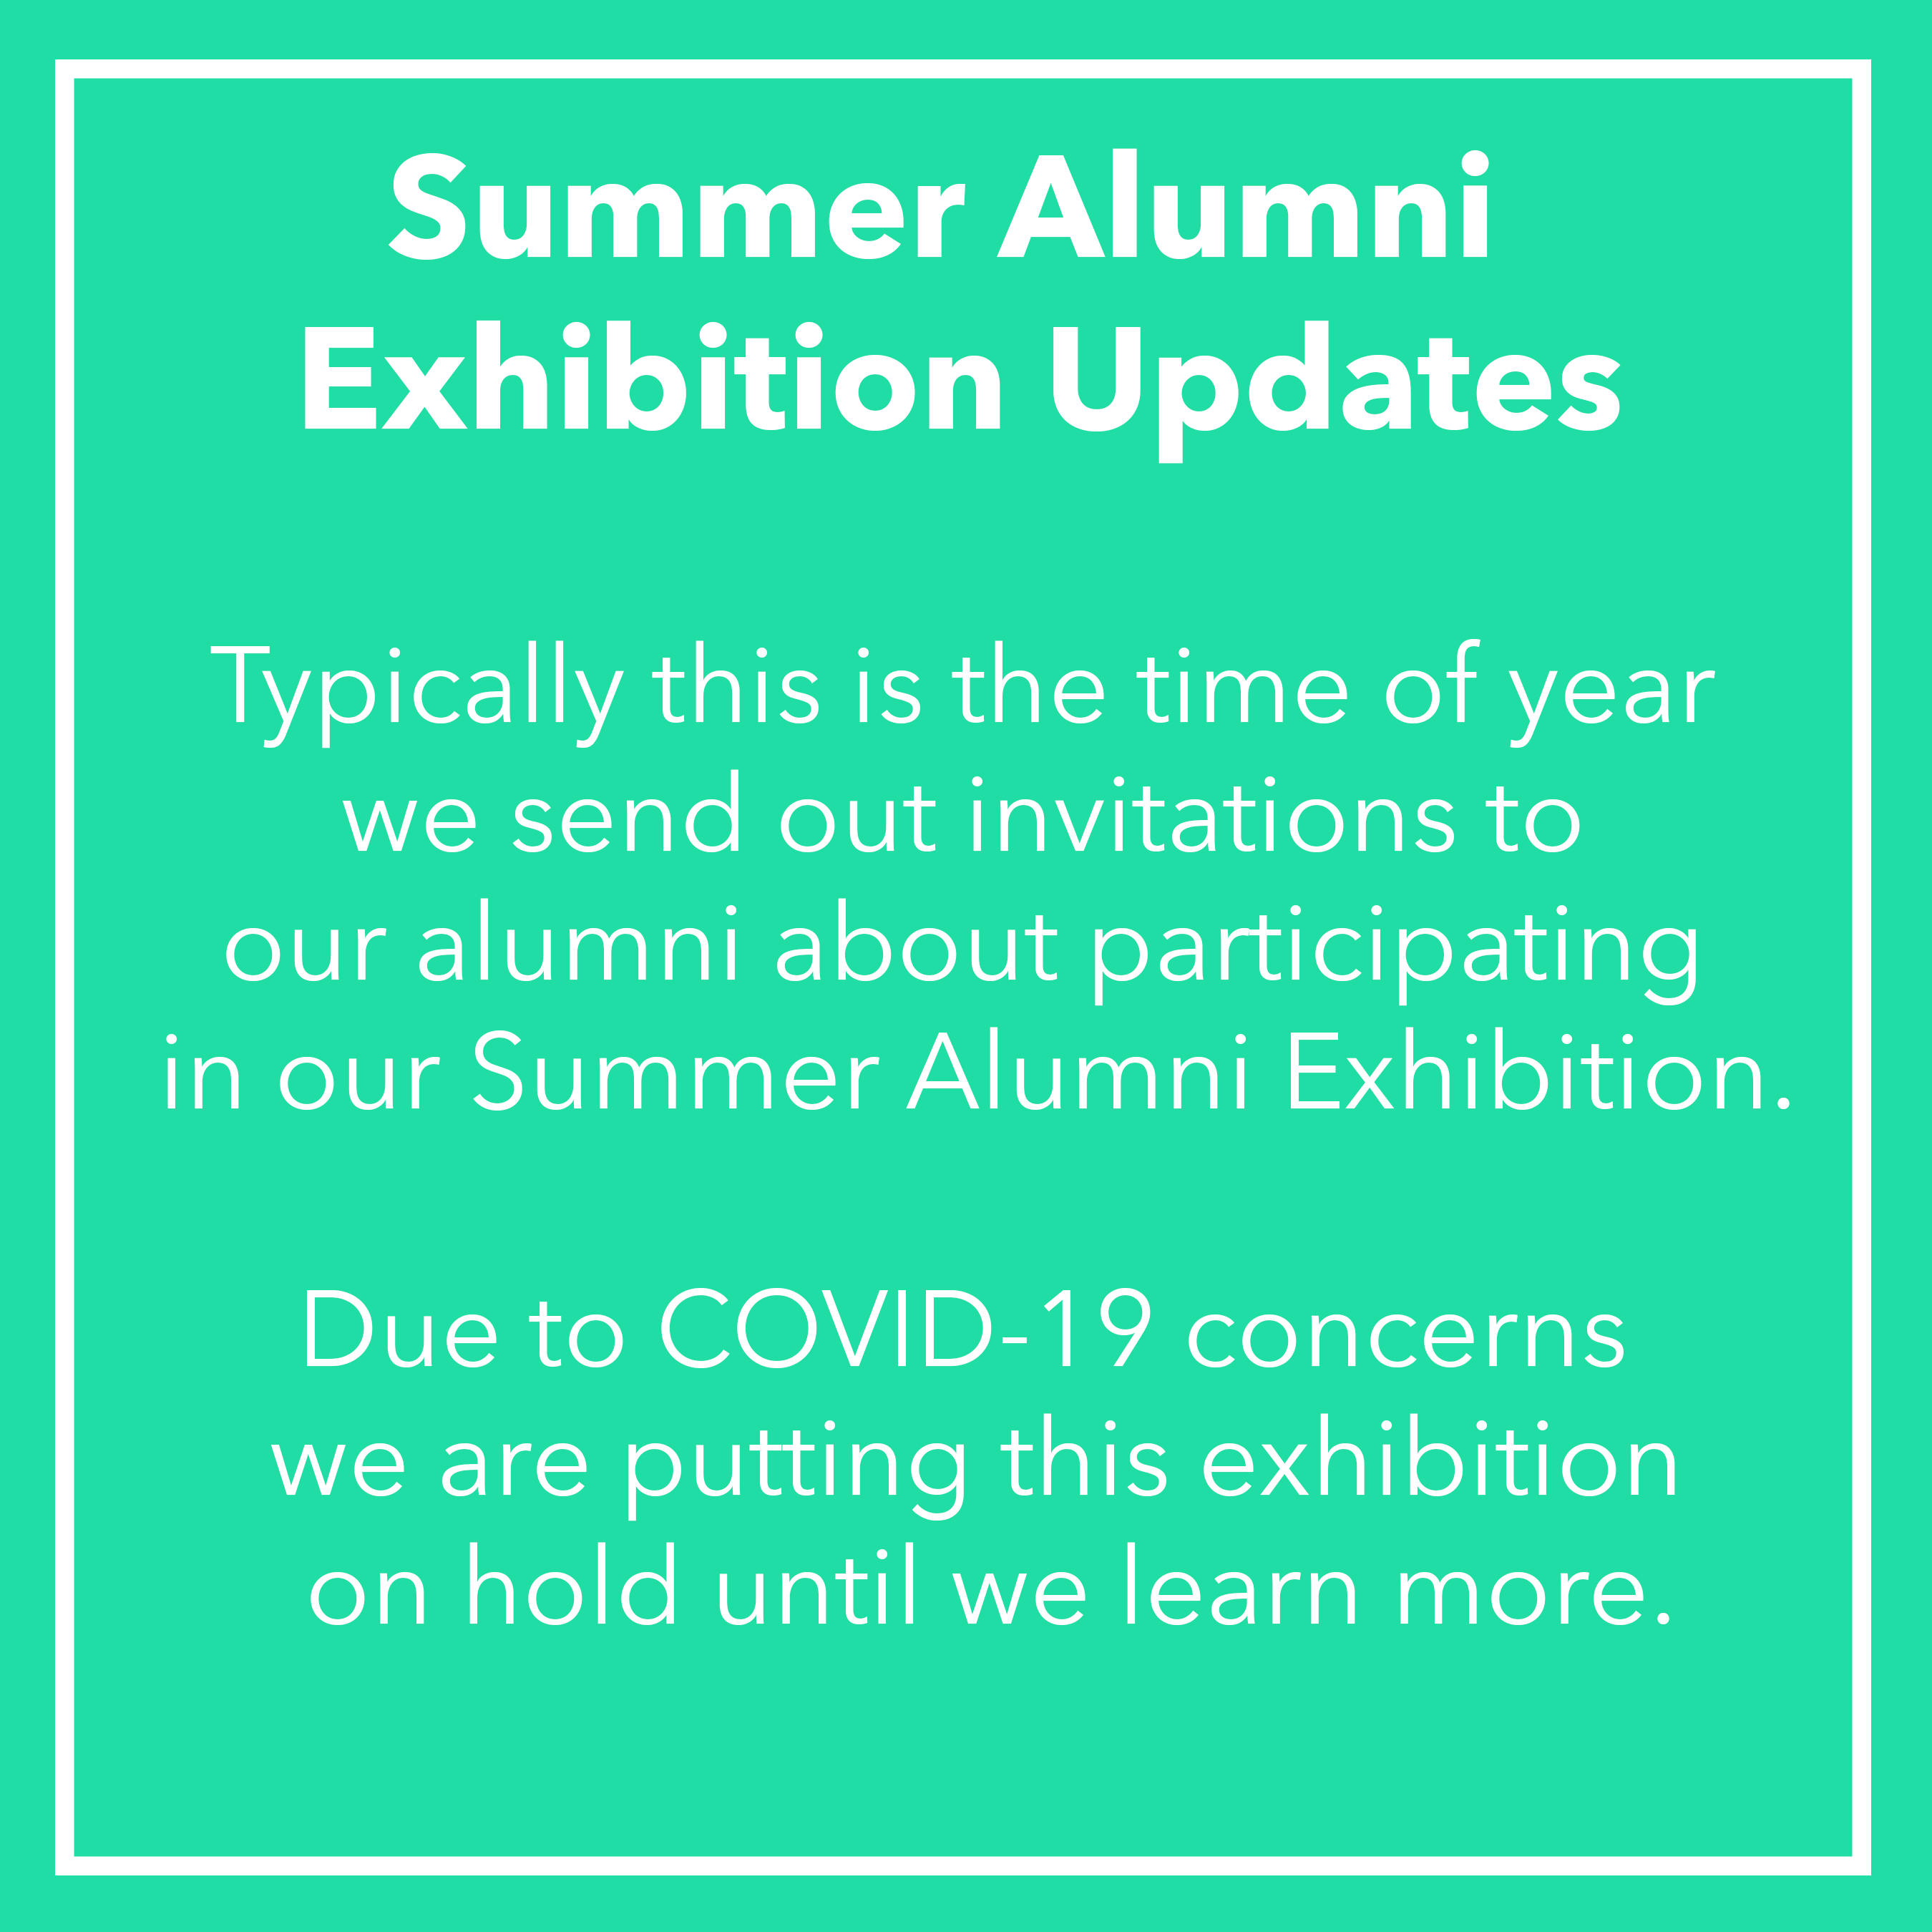 Summer Alumni Exhibition Updates